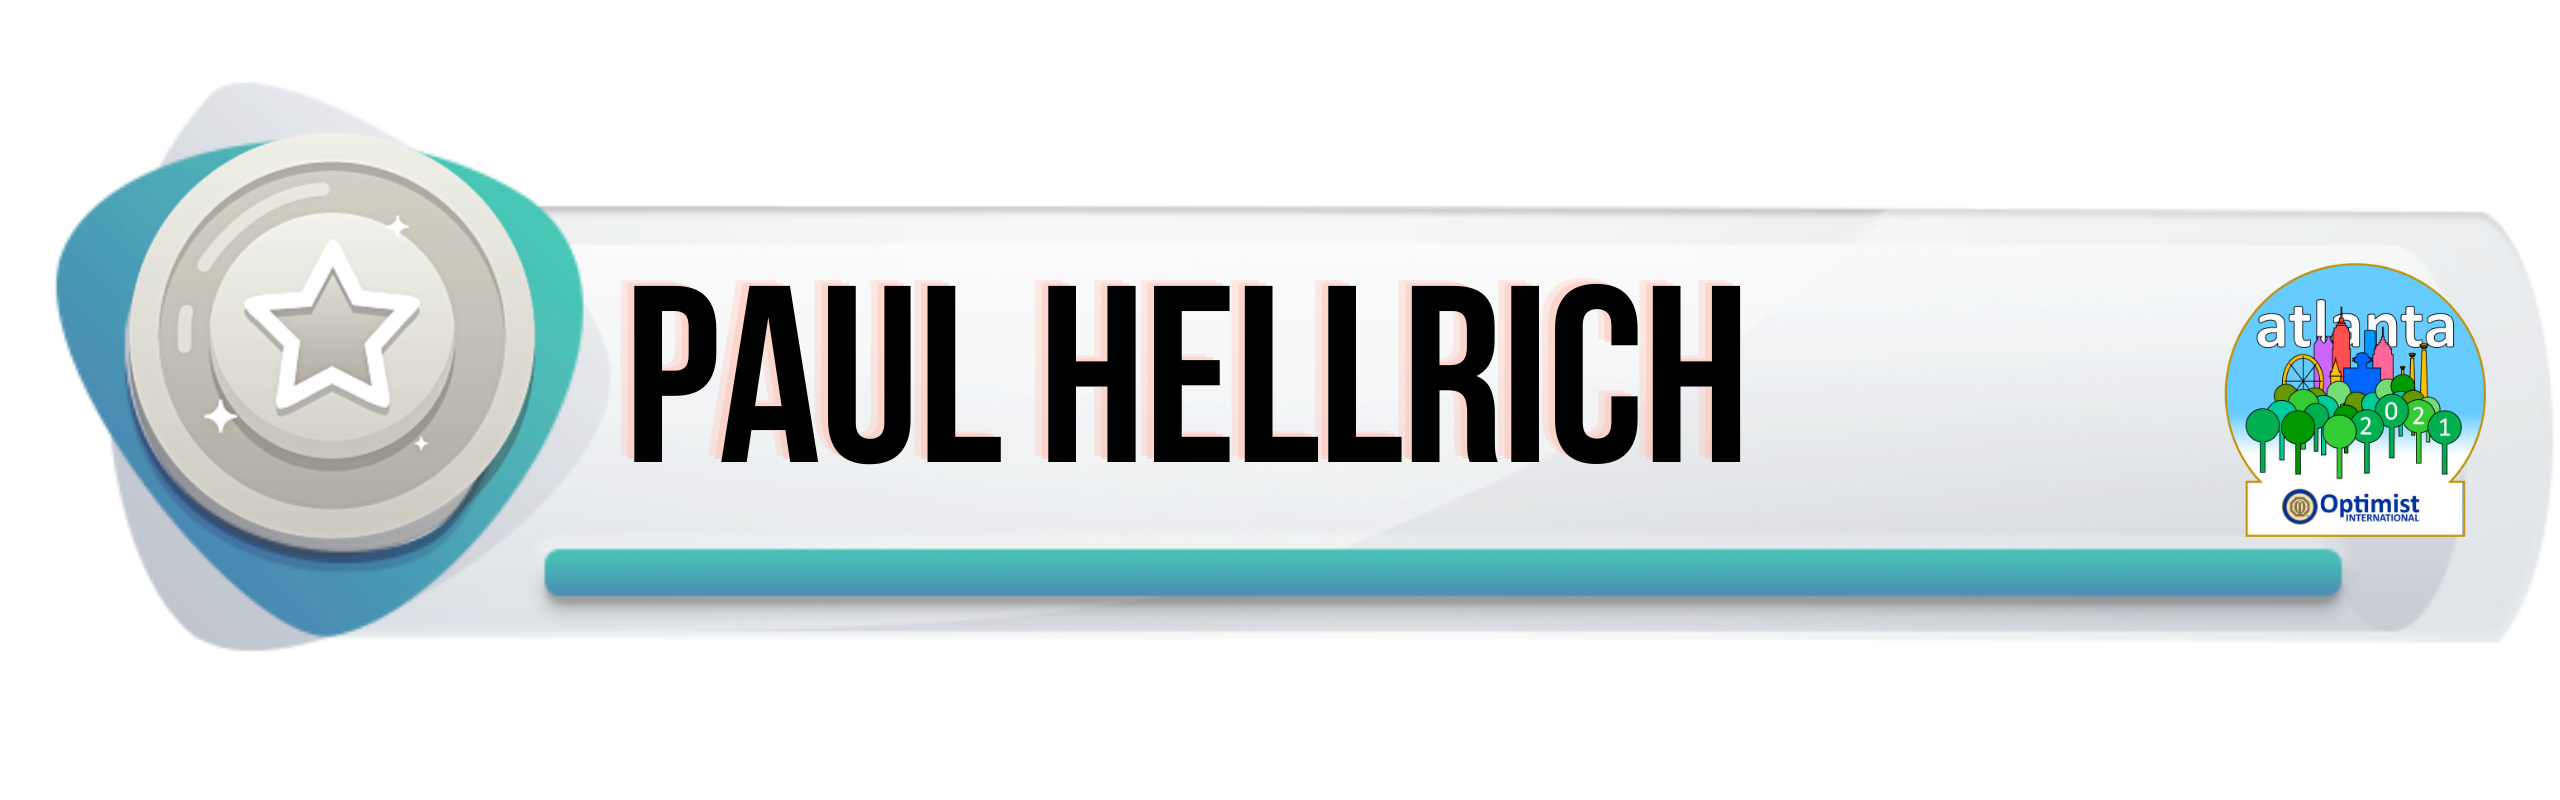 Paul Hellrich